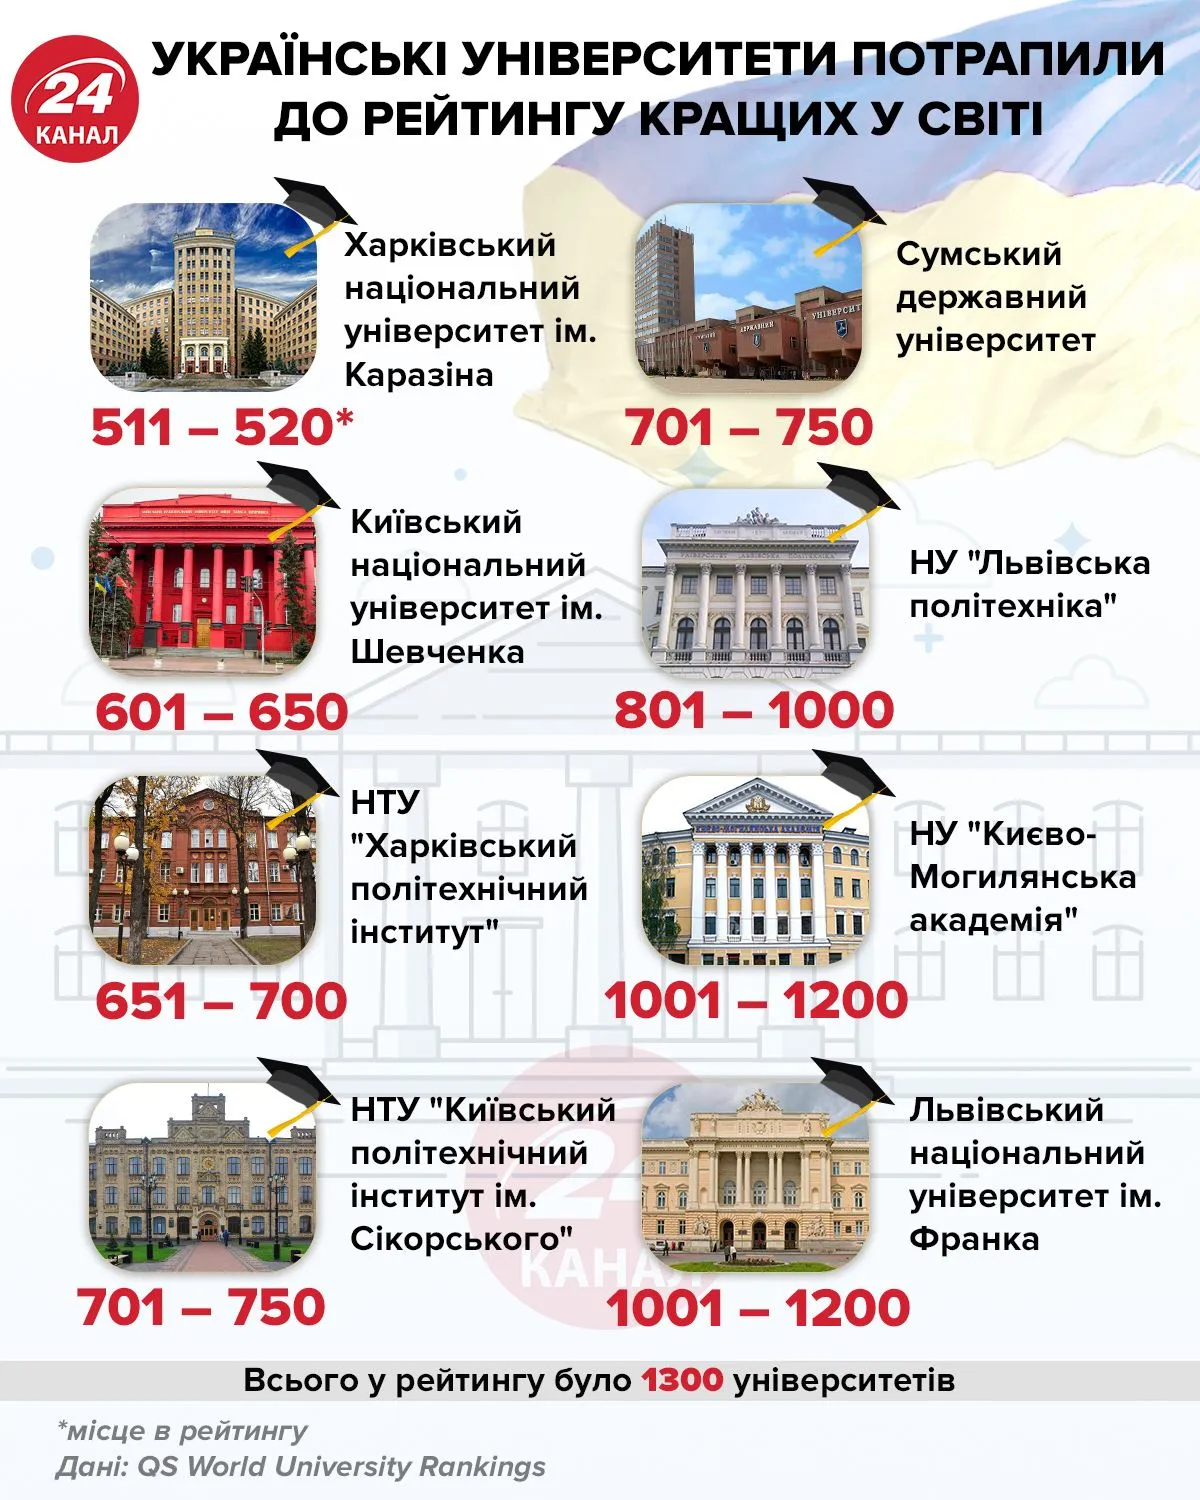 Українські університети, які потрапили до рейтингу кращих вишів світу / Інфографіка 24 каналу